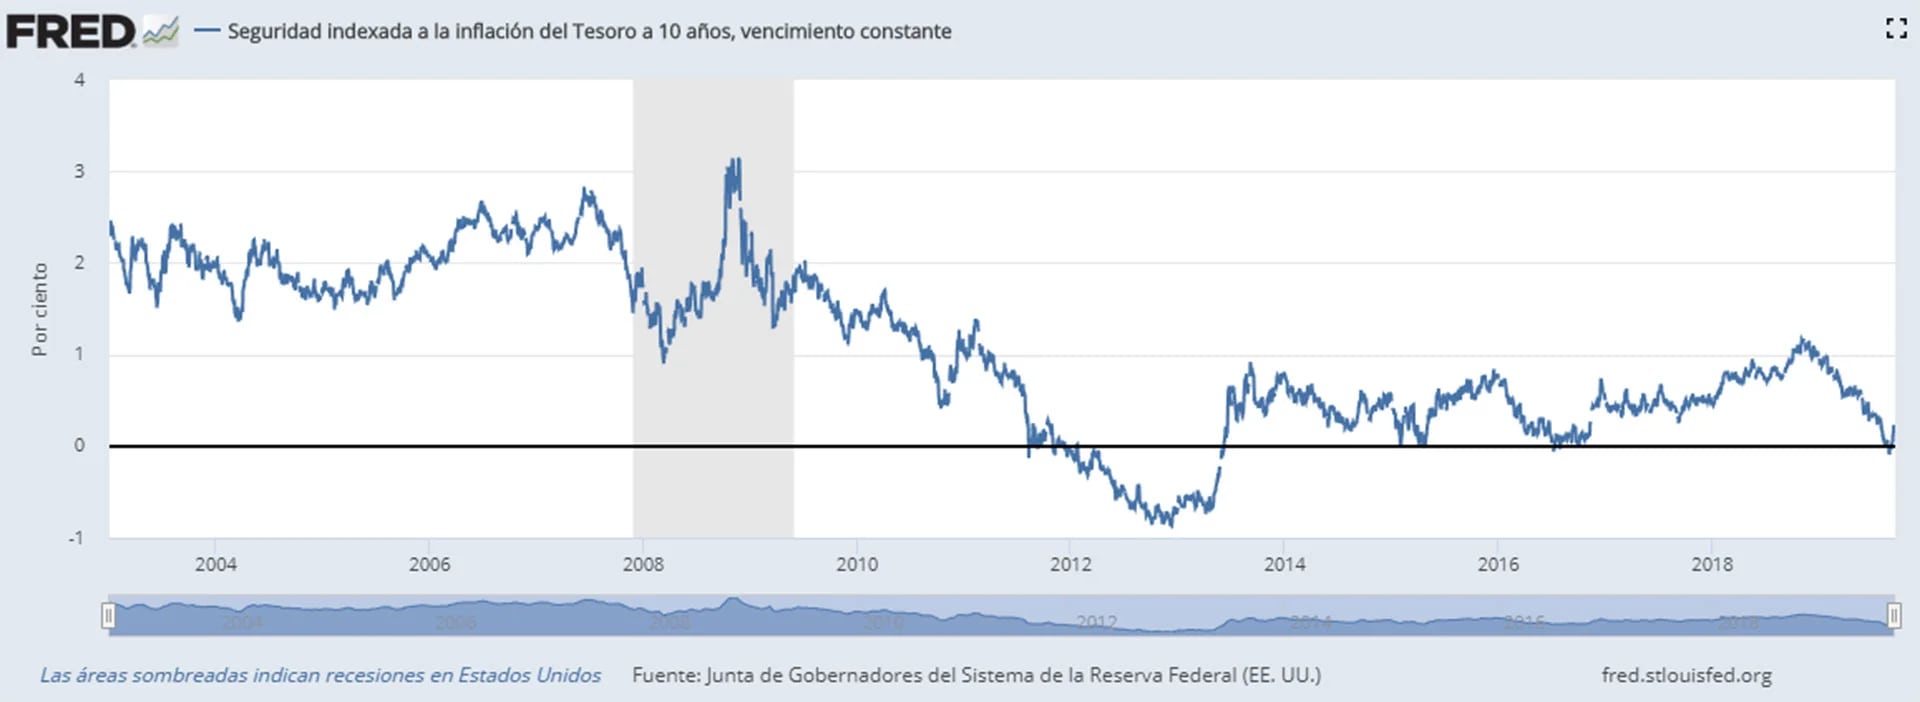 Ajustado por inflación, el rendimiento de los bonos del tesoro estadounidense a 10 años es efectivamente cero